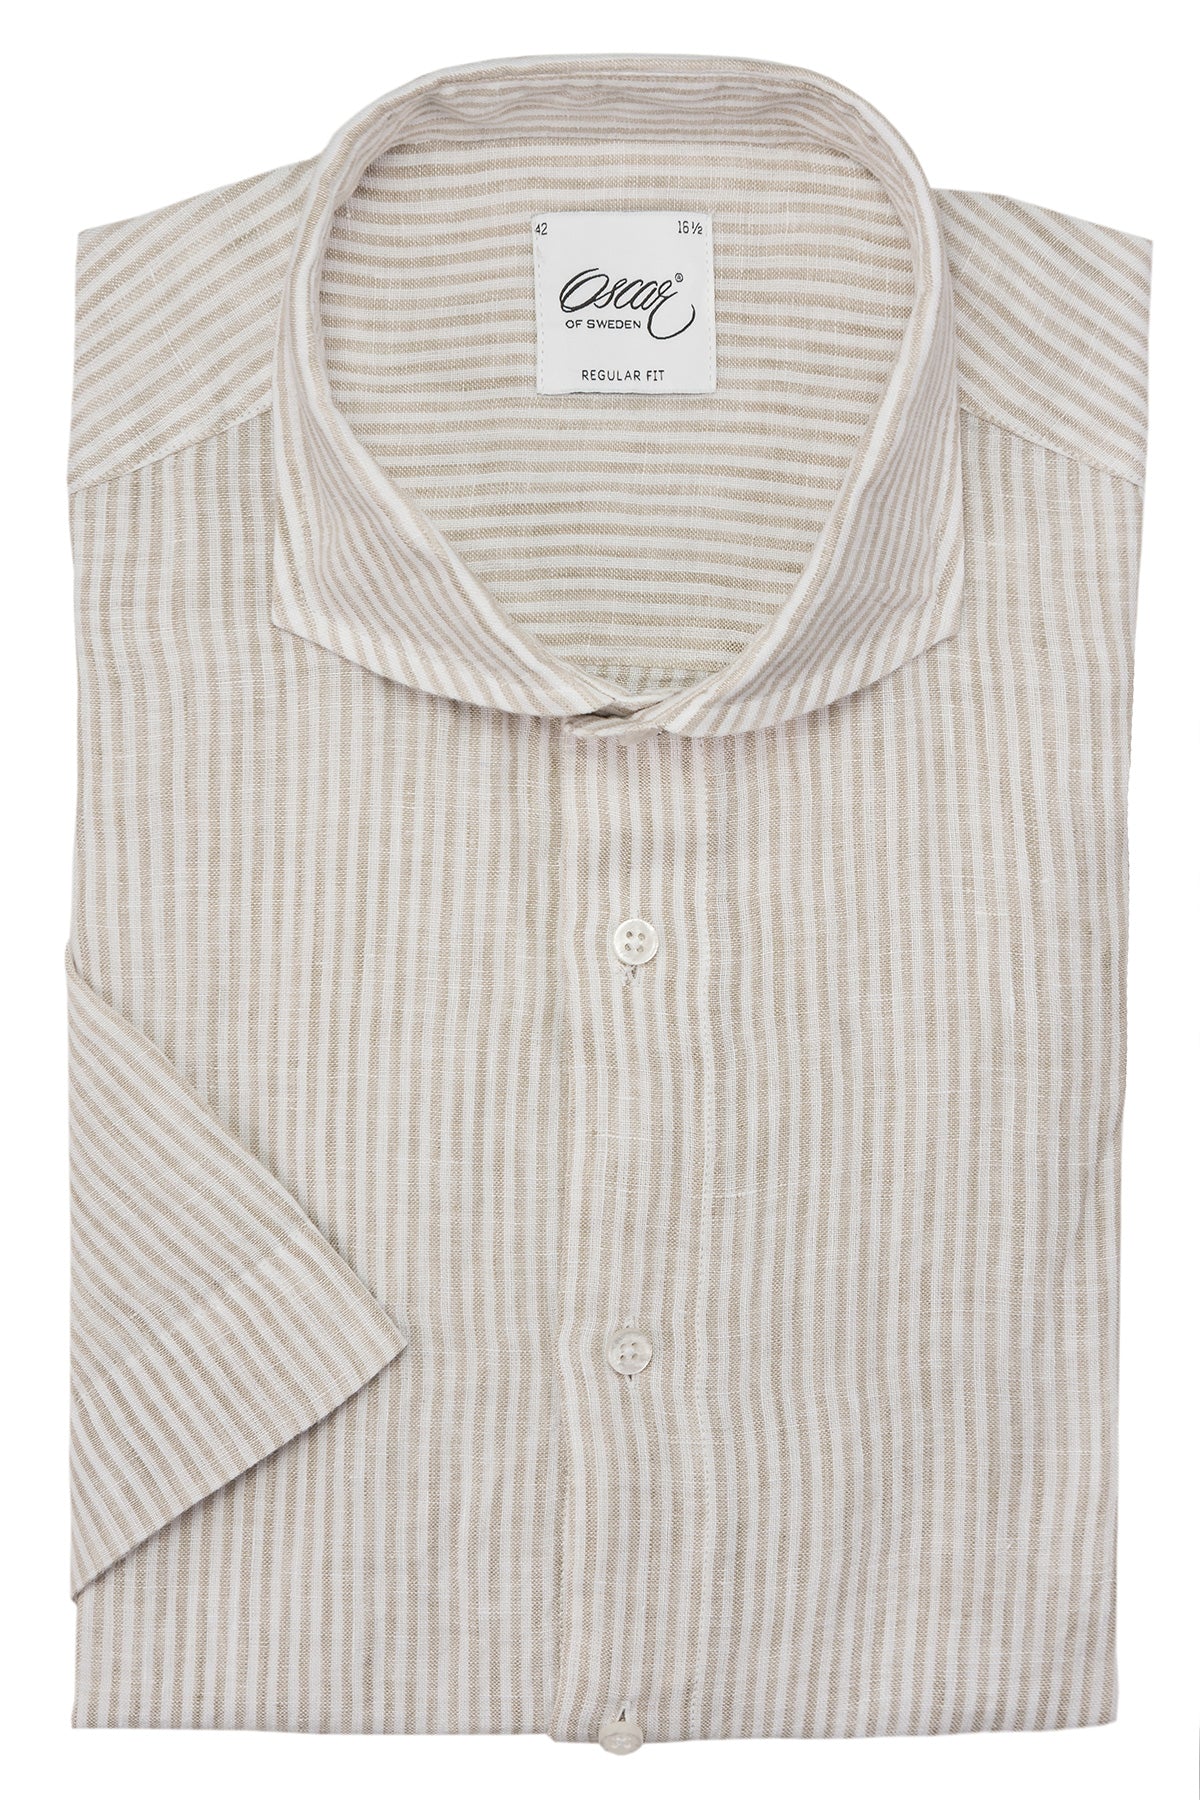 Beige striped linen short sleeve regular fit shirt